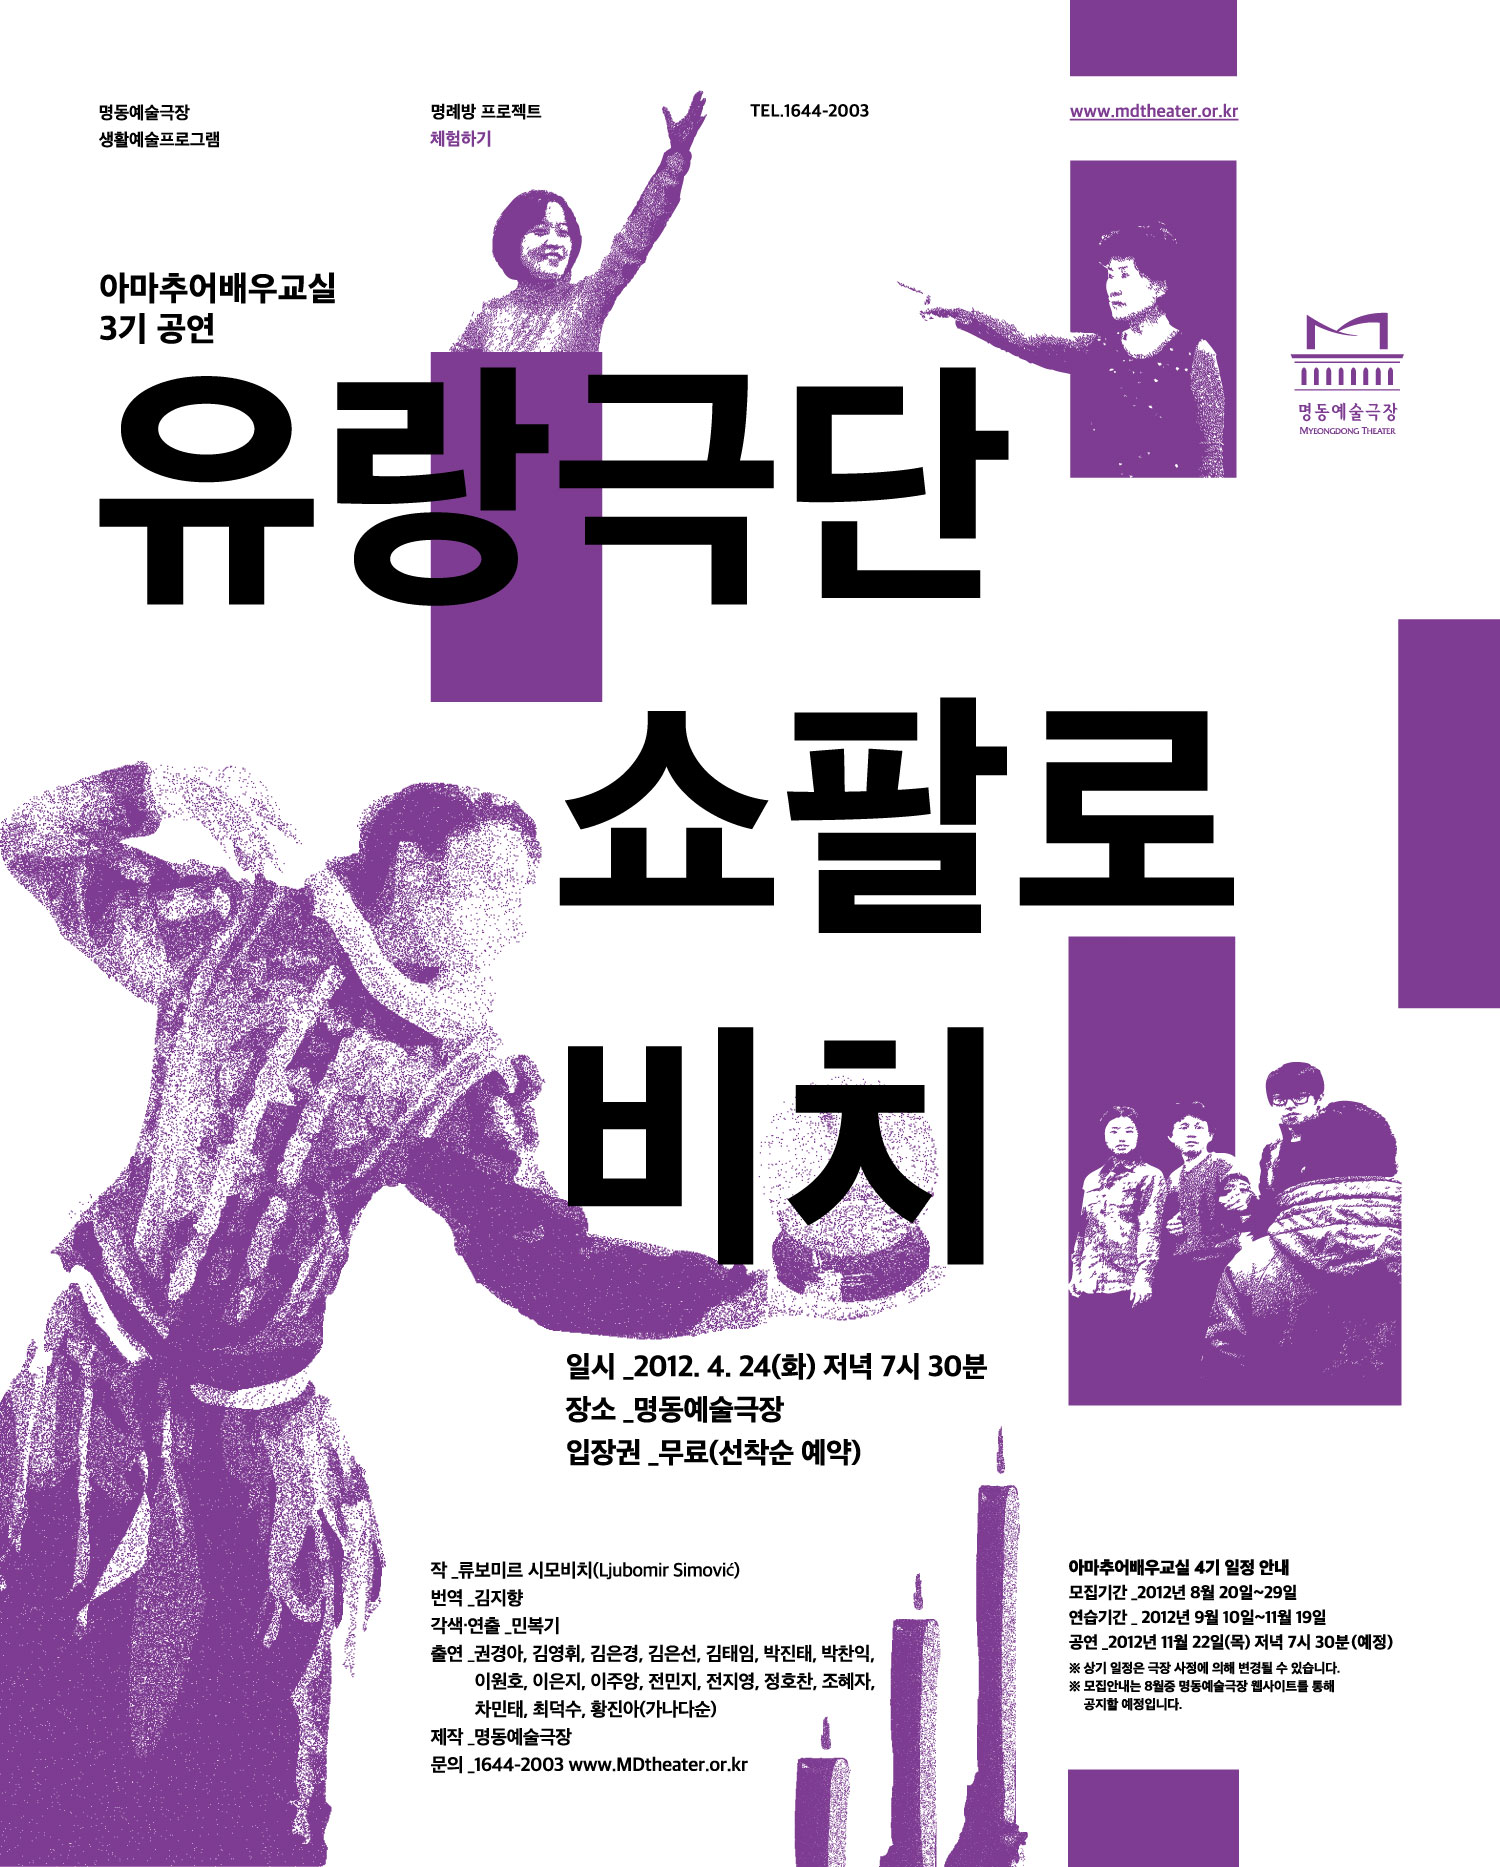 아마추어배우교실 3기공연 "유랑극단 쇼팔로비치" 포스터 이미지